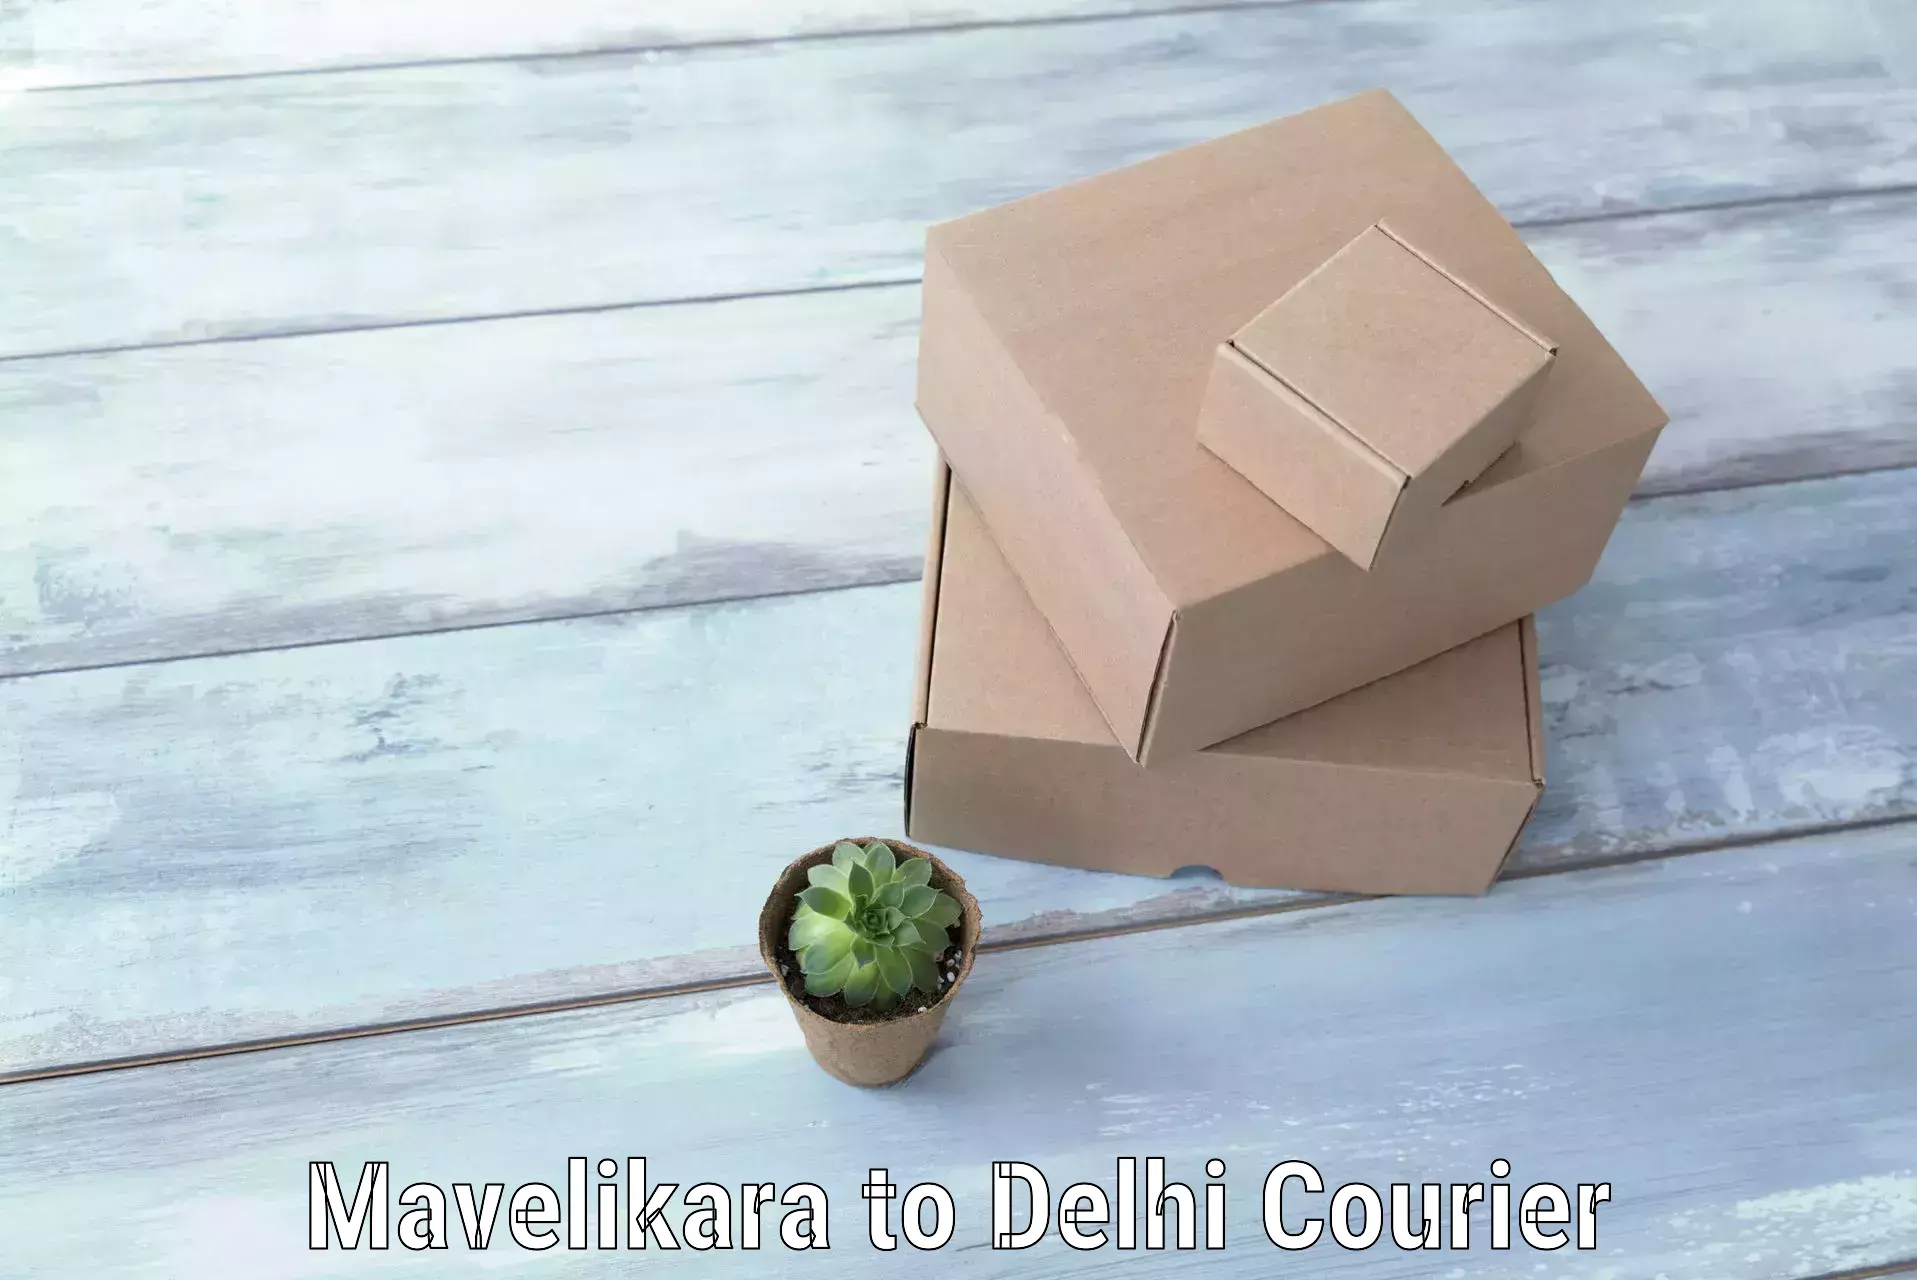 Baggage courier service Mavelikara to Delhi